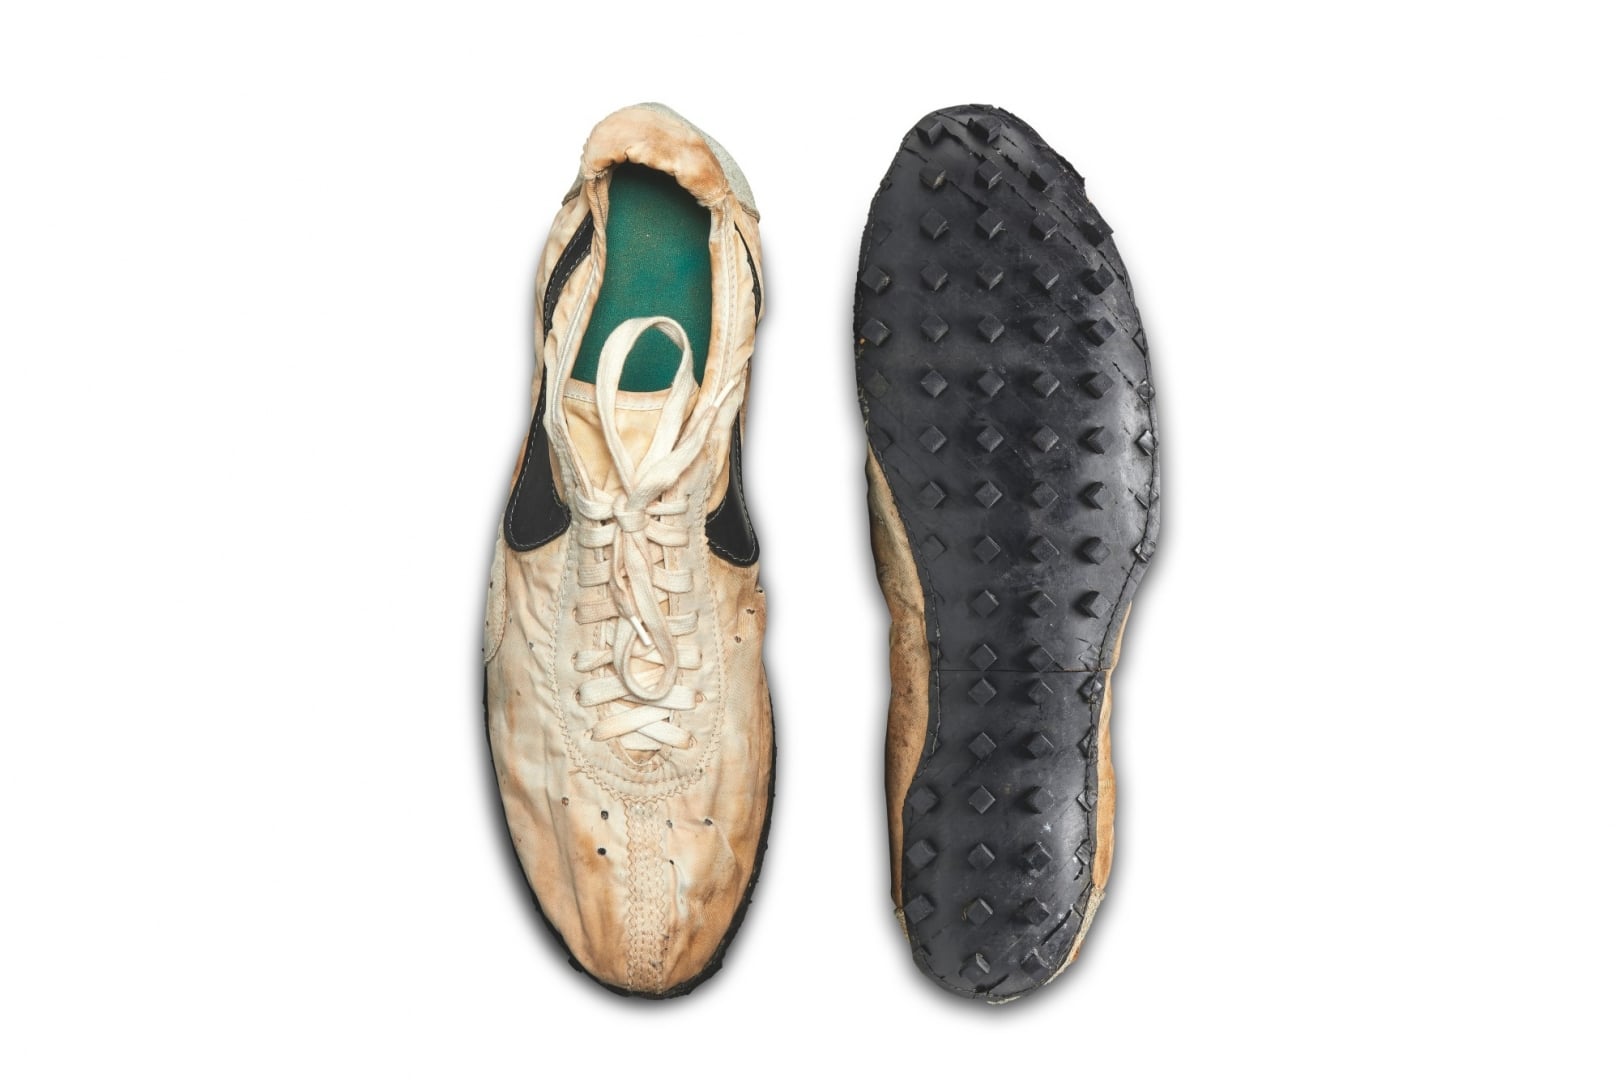 # 不只是蘇富比最貴球鞋： Nike Moon Shoe 還承載了田徑教練的崢嶸歲月 13